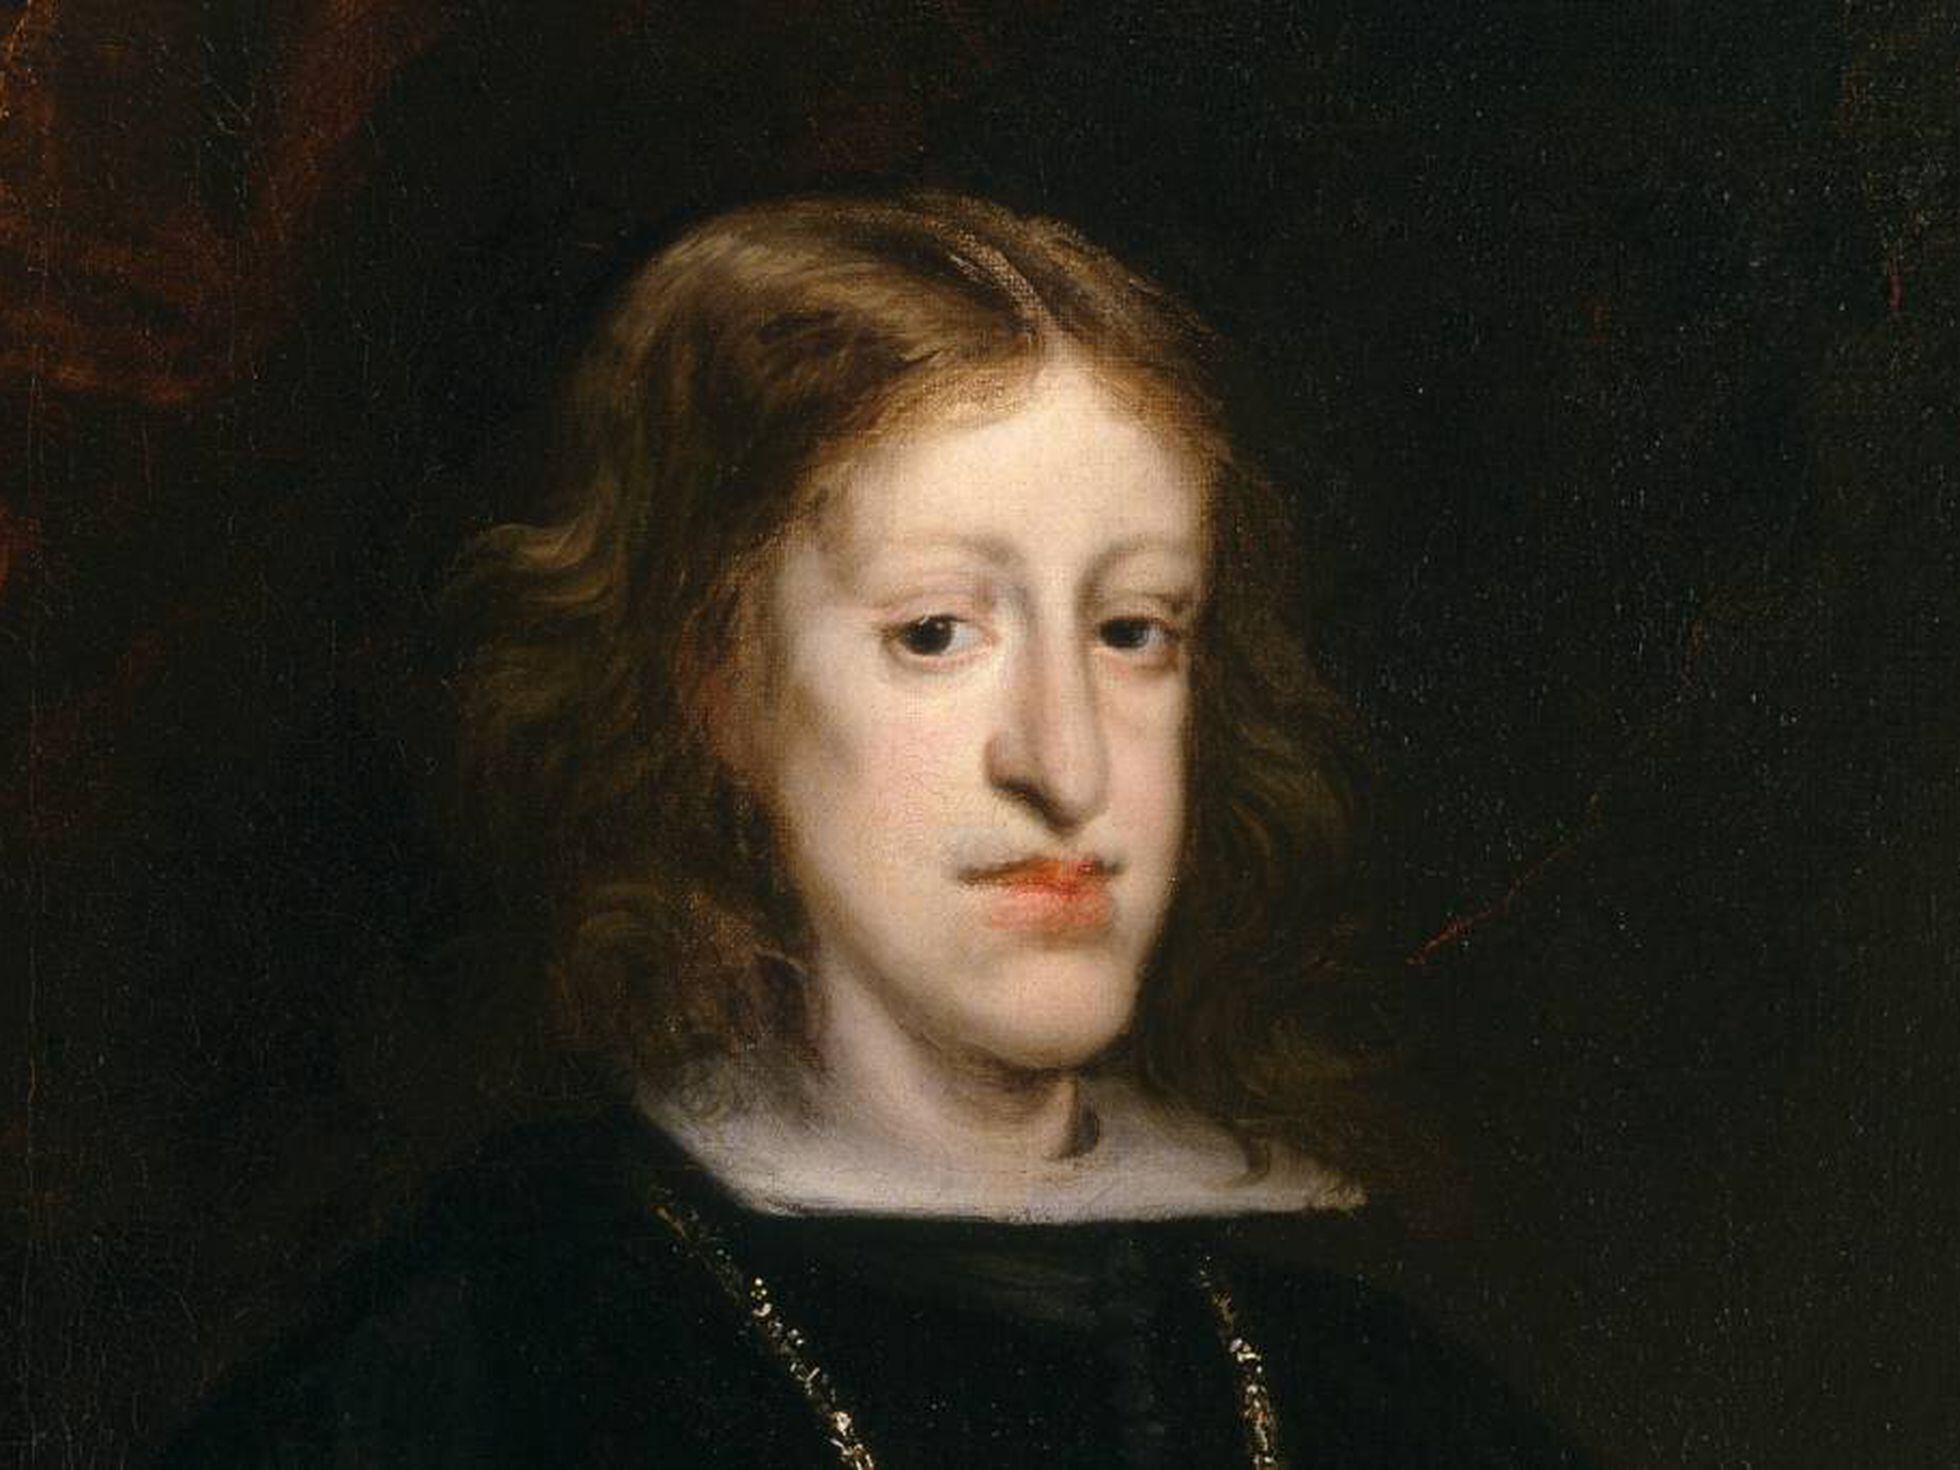 Sexo entre parentes causou deformidade facial dos reis espanhóis